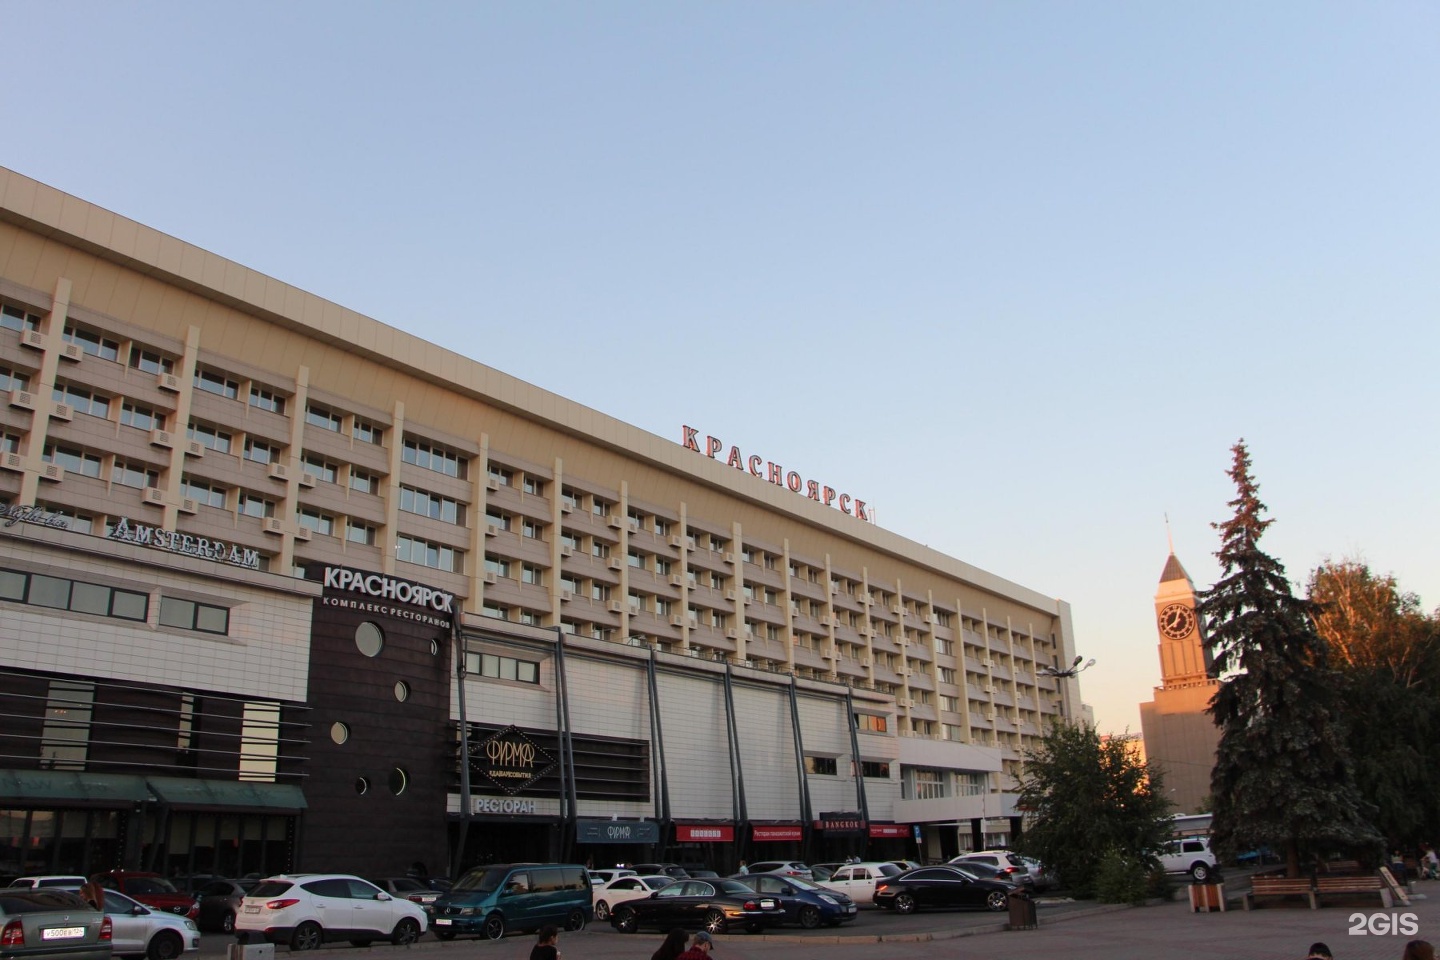 Гостиница в красноярске возле жд вокзала недорого цена